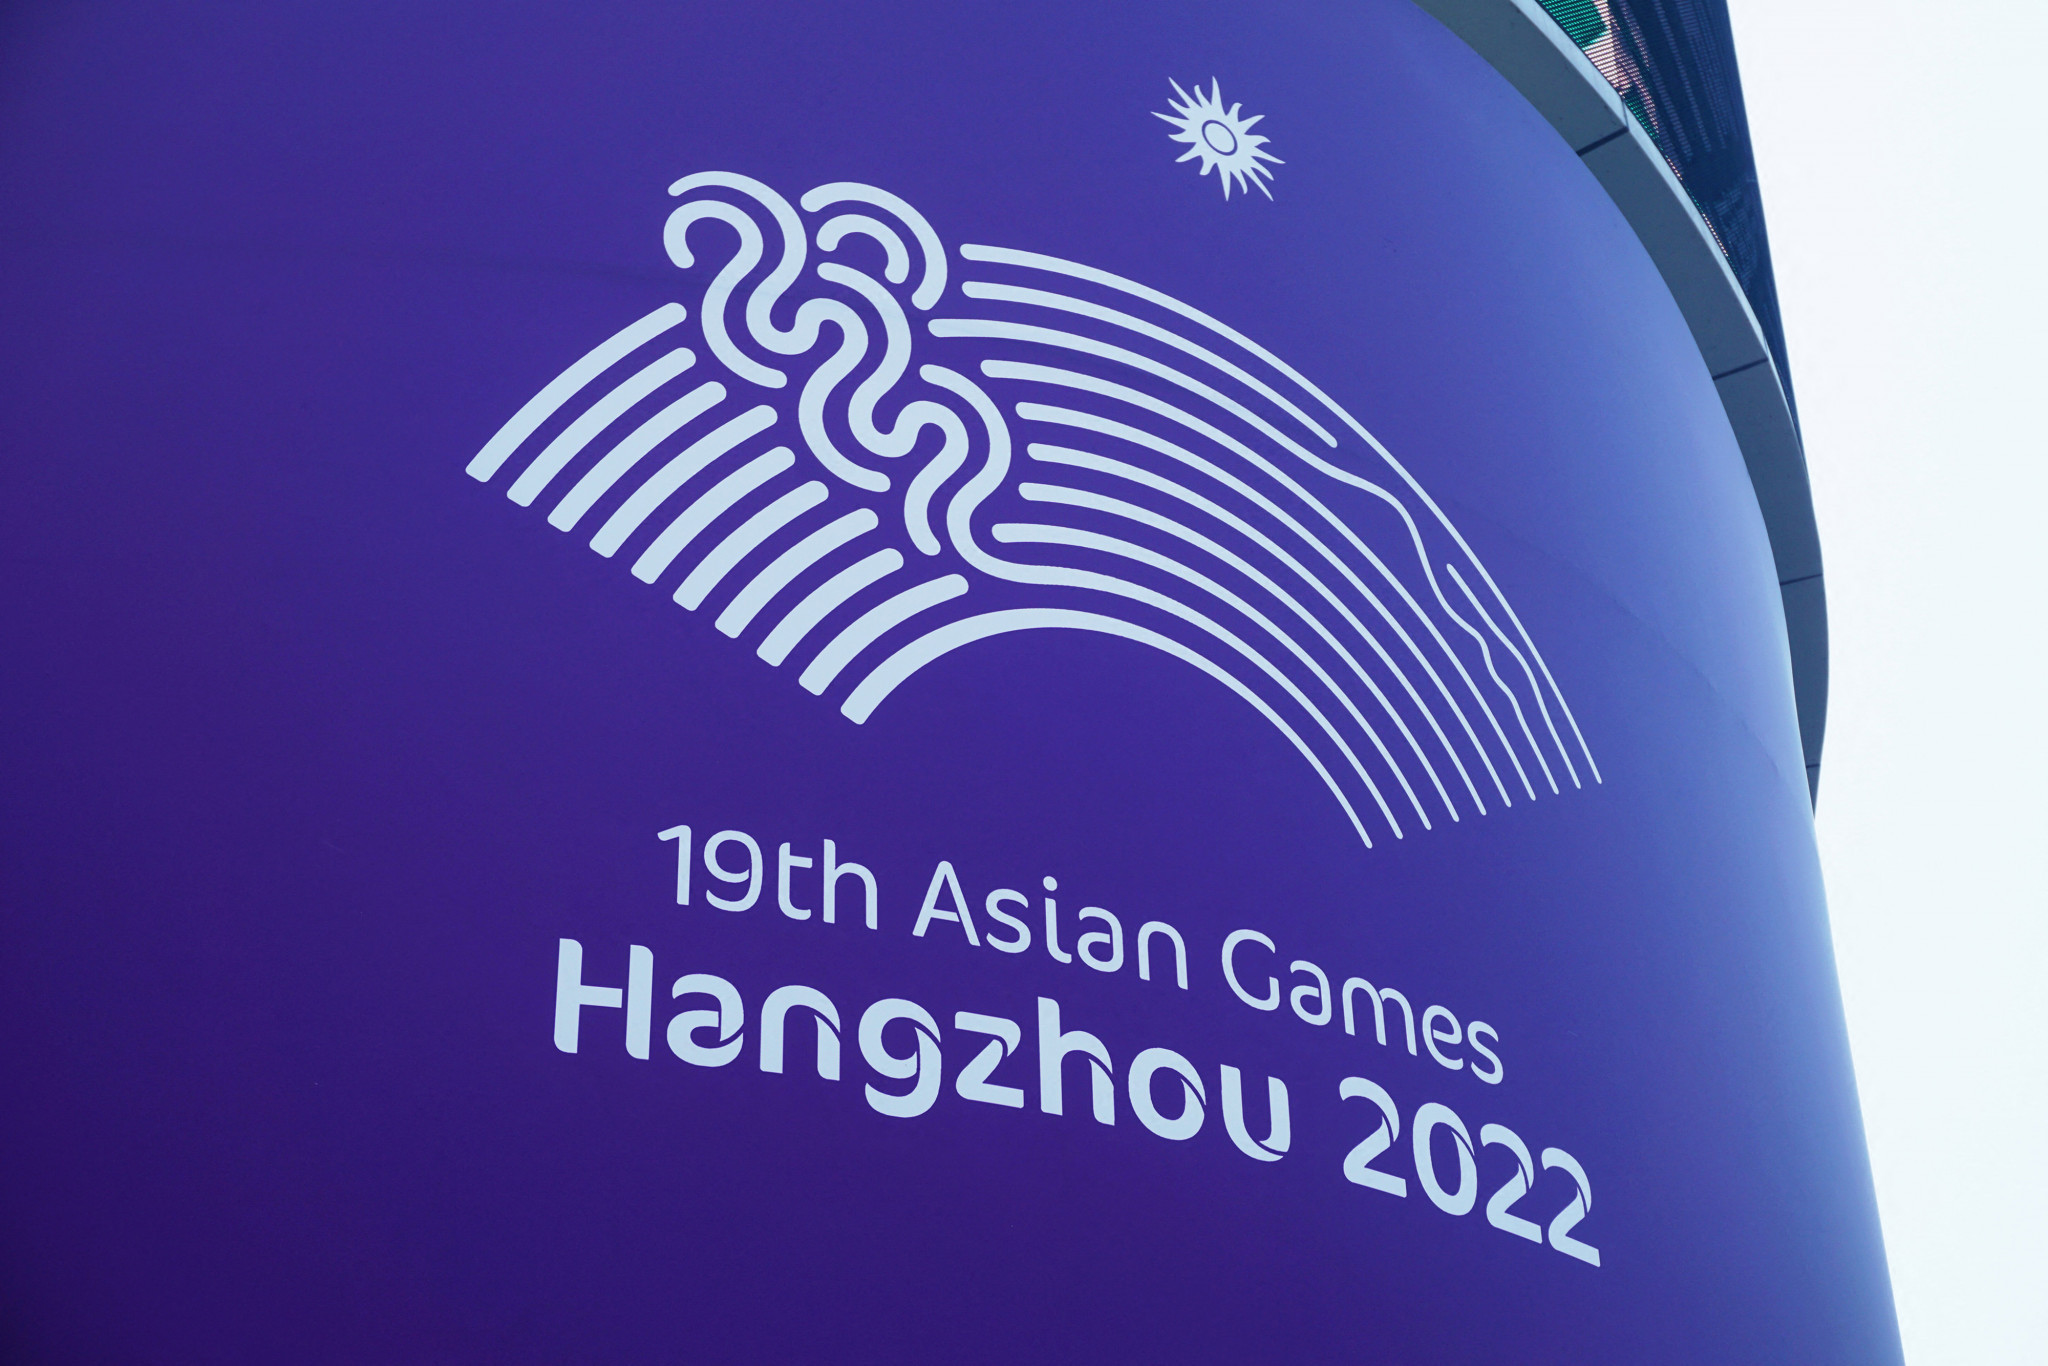 Hangzhou's postponed Asian Games set for September 2023 start